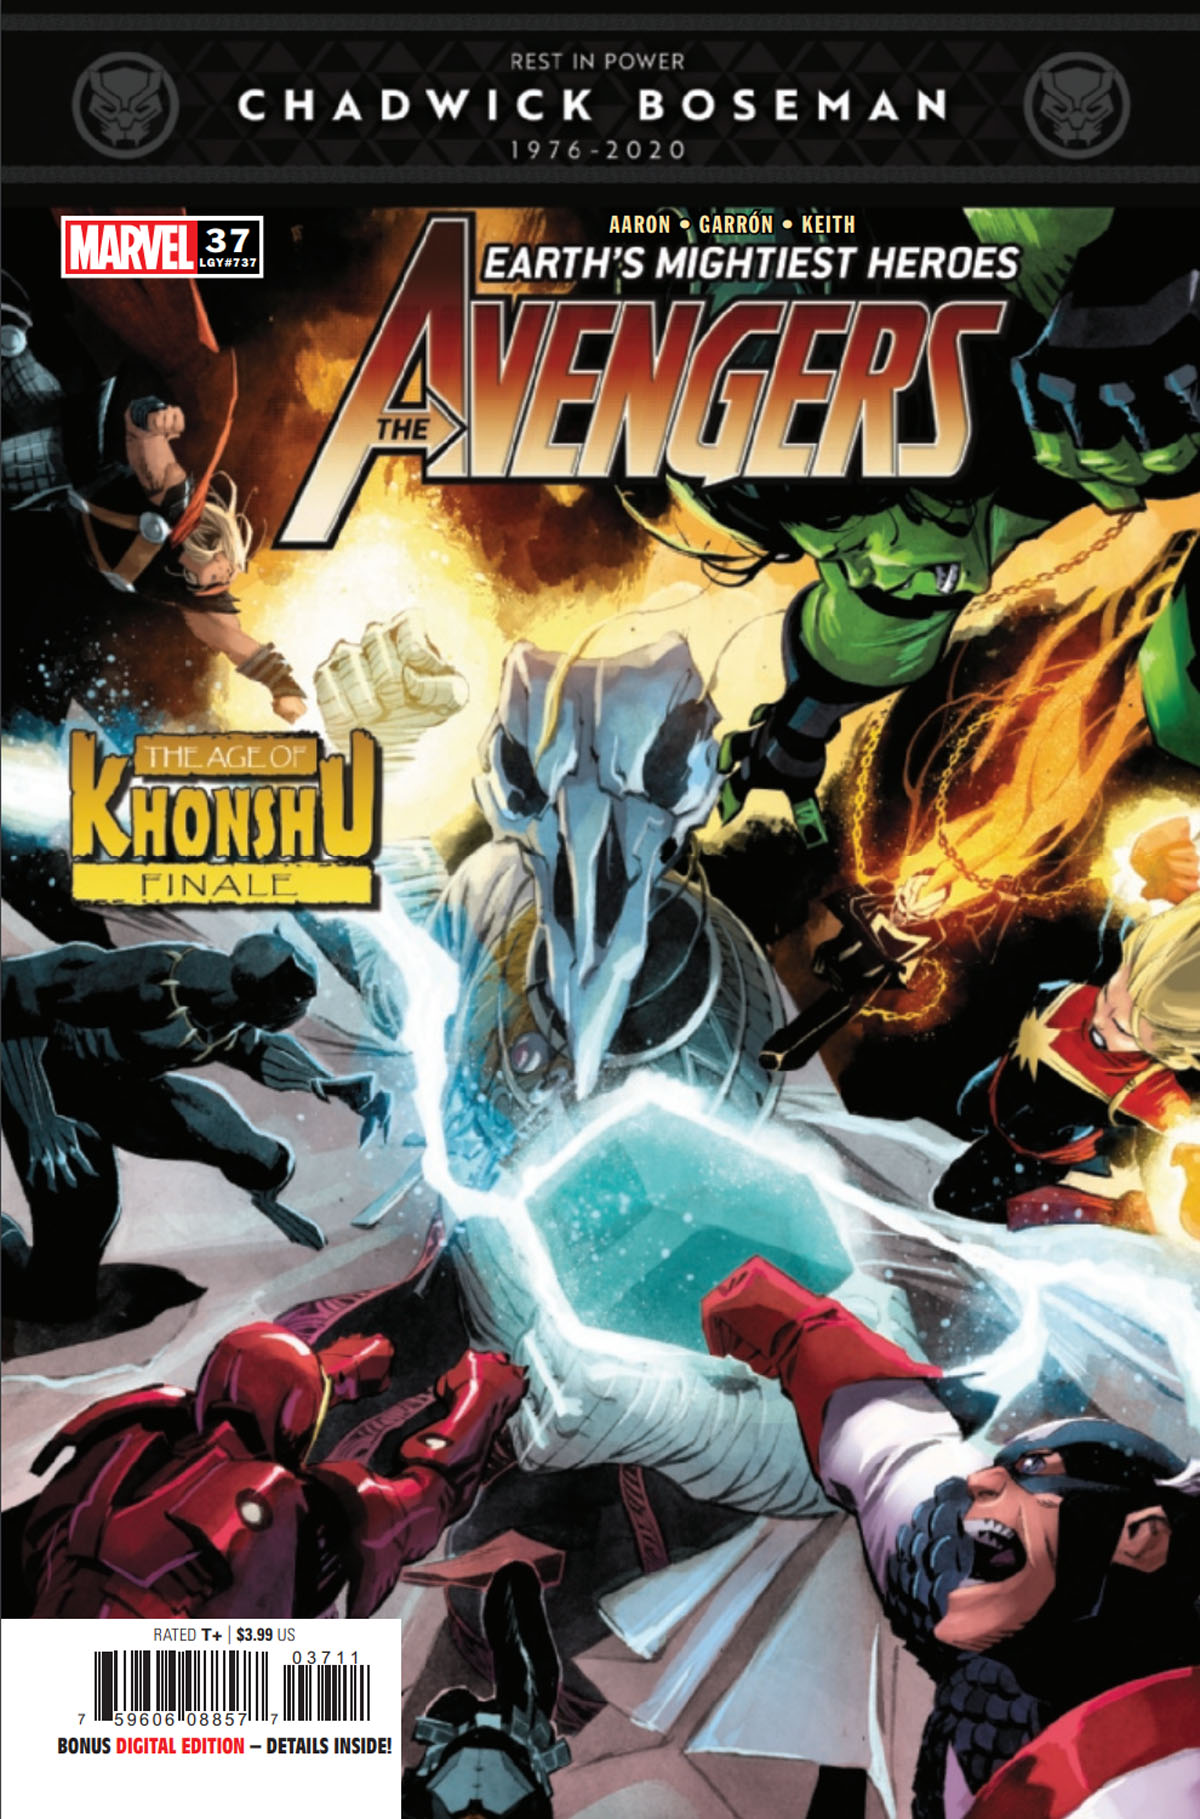 Avengers #37 cover